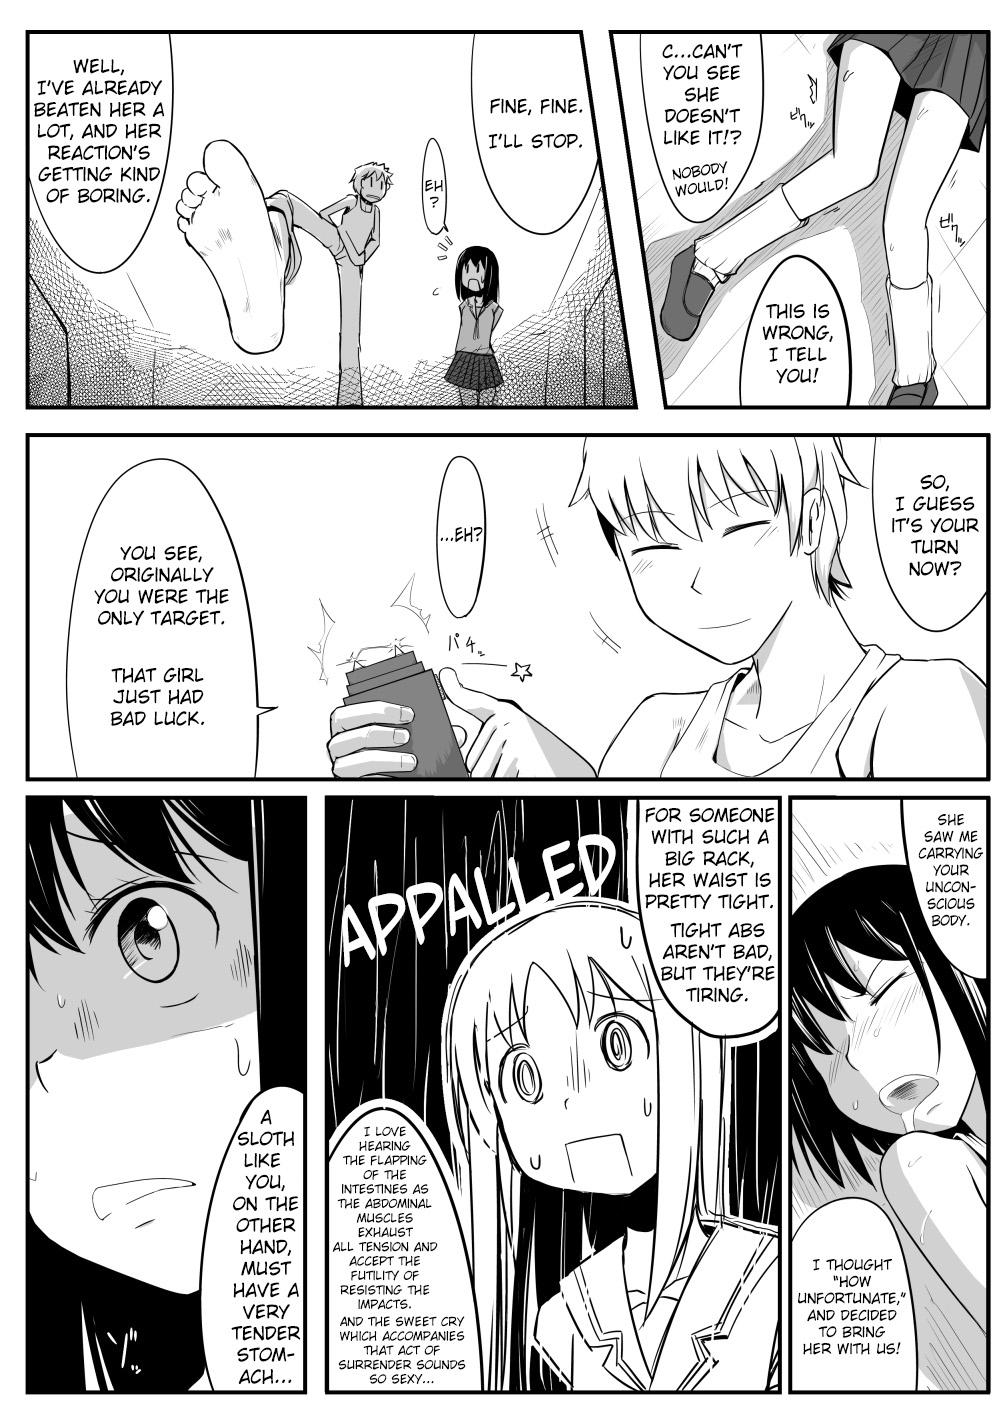 Cock Suckers Manga About Viciously Beating Osaka’s Stomach - Azumanga daioh Casa - Page 5